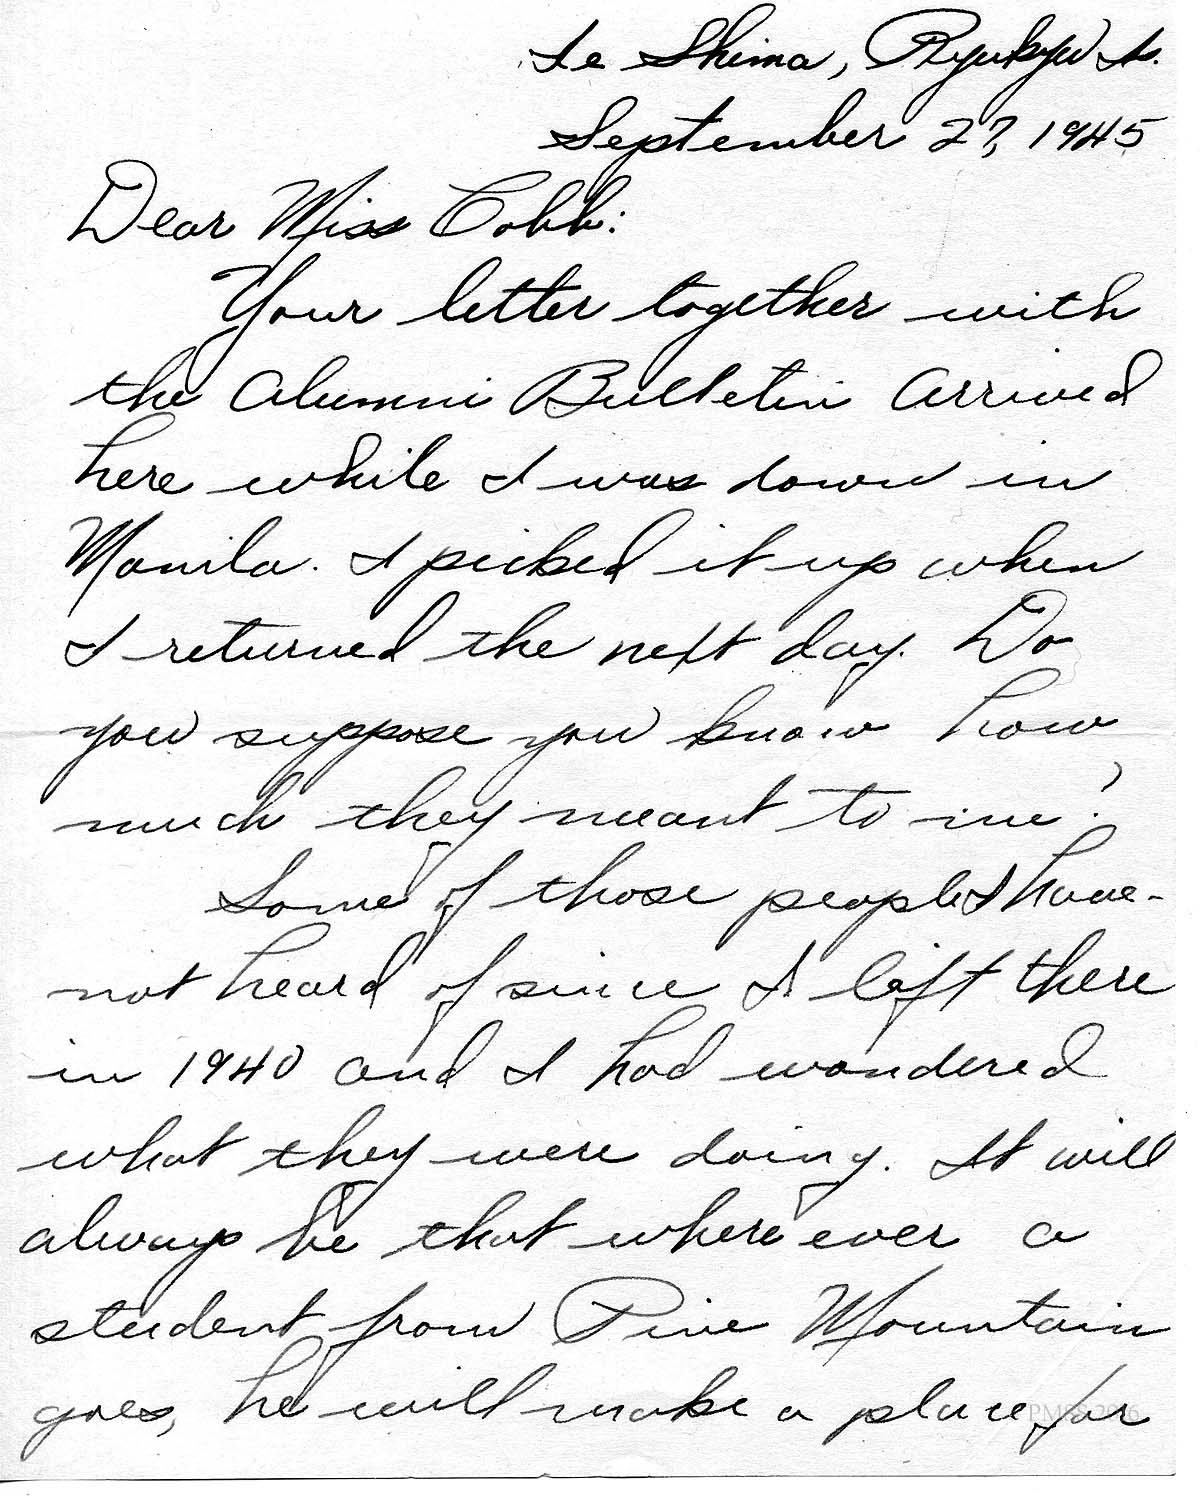 WILBUR WILDER WWII Letter